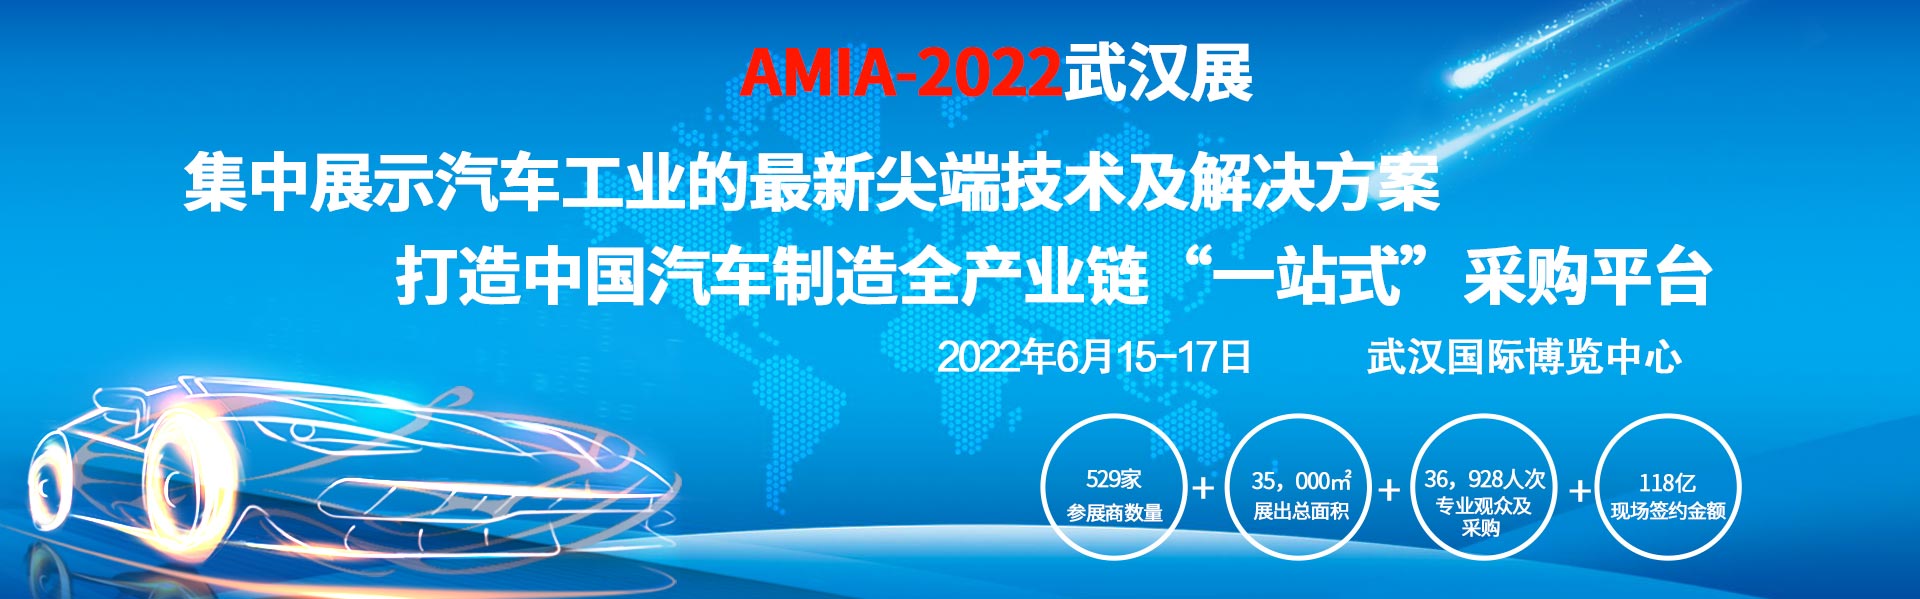 [武汉展会动态]APICV-2022亚太智能汽车技术大会